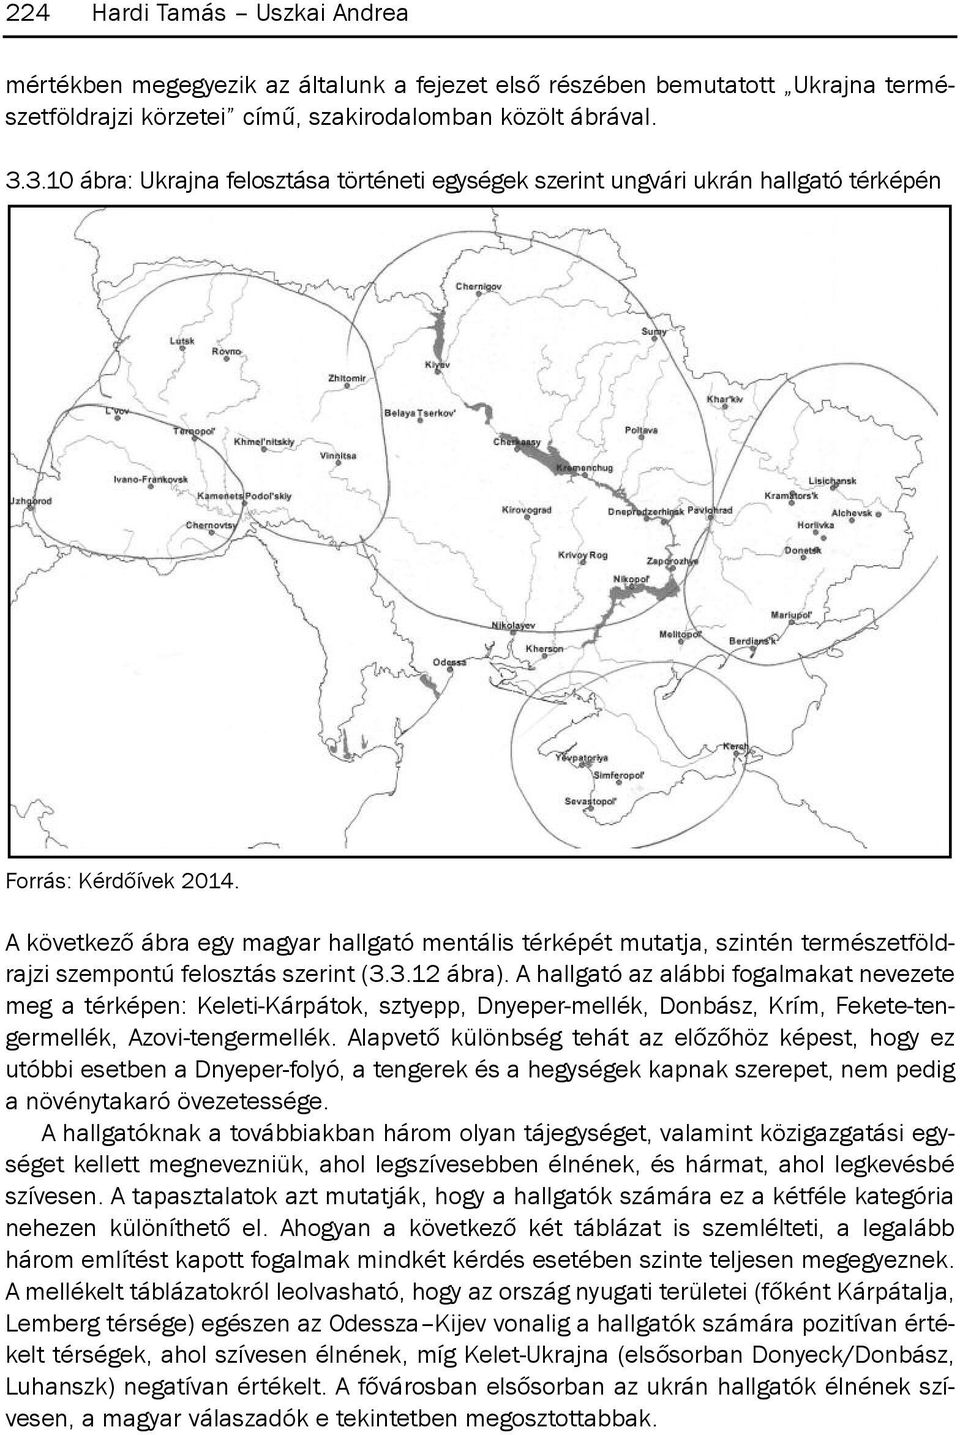 A következő ábra egy magyar hallgató mentális térképét mutatja, szintén természetföldrajzi szempontú felosztás szerint (3.3.12 ábra).